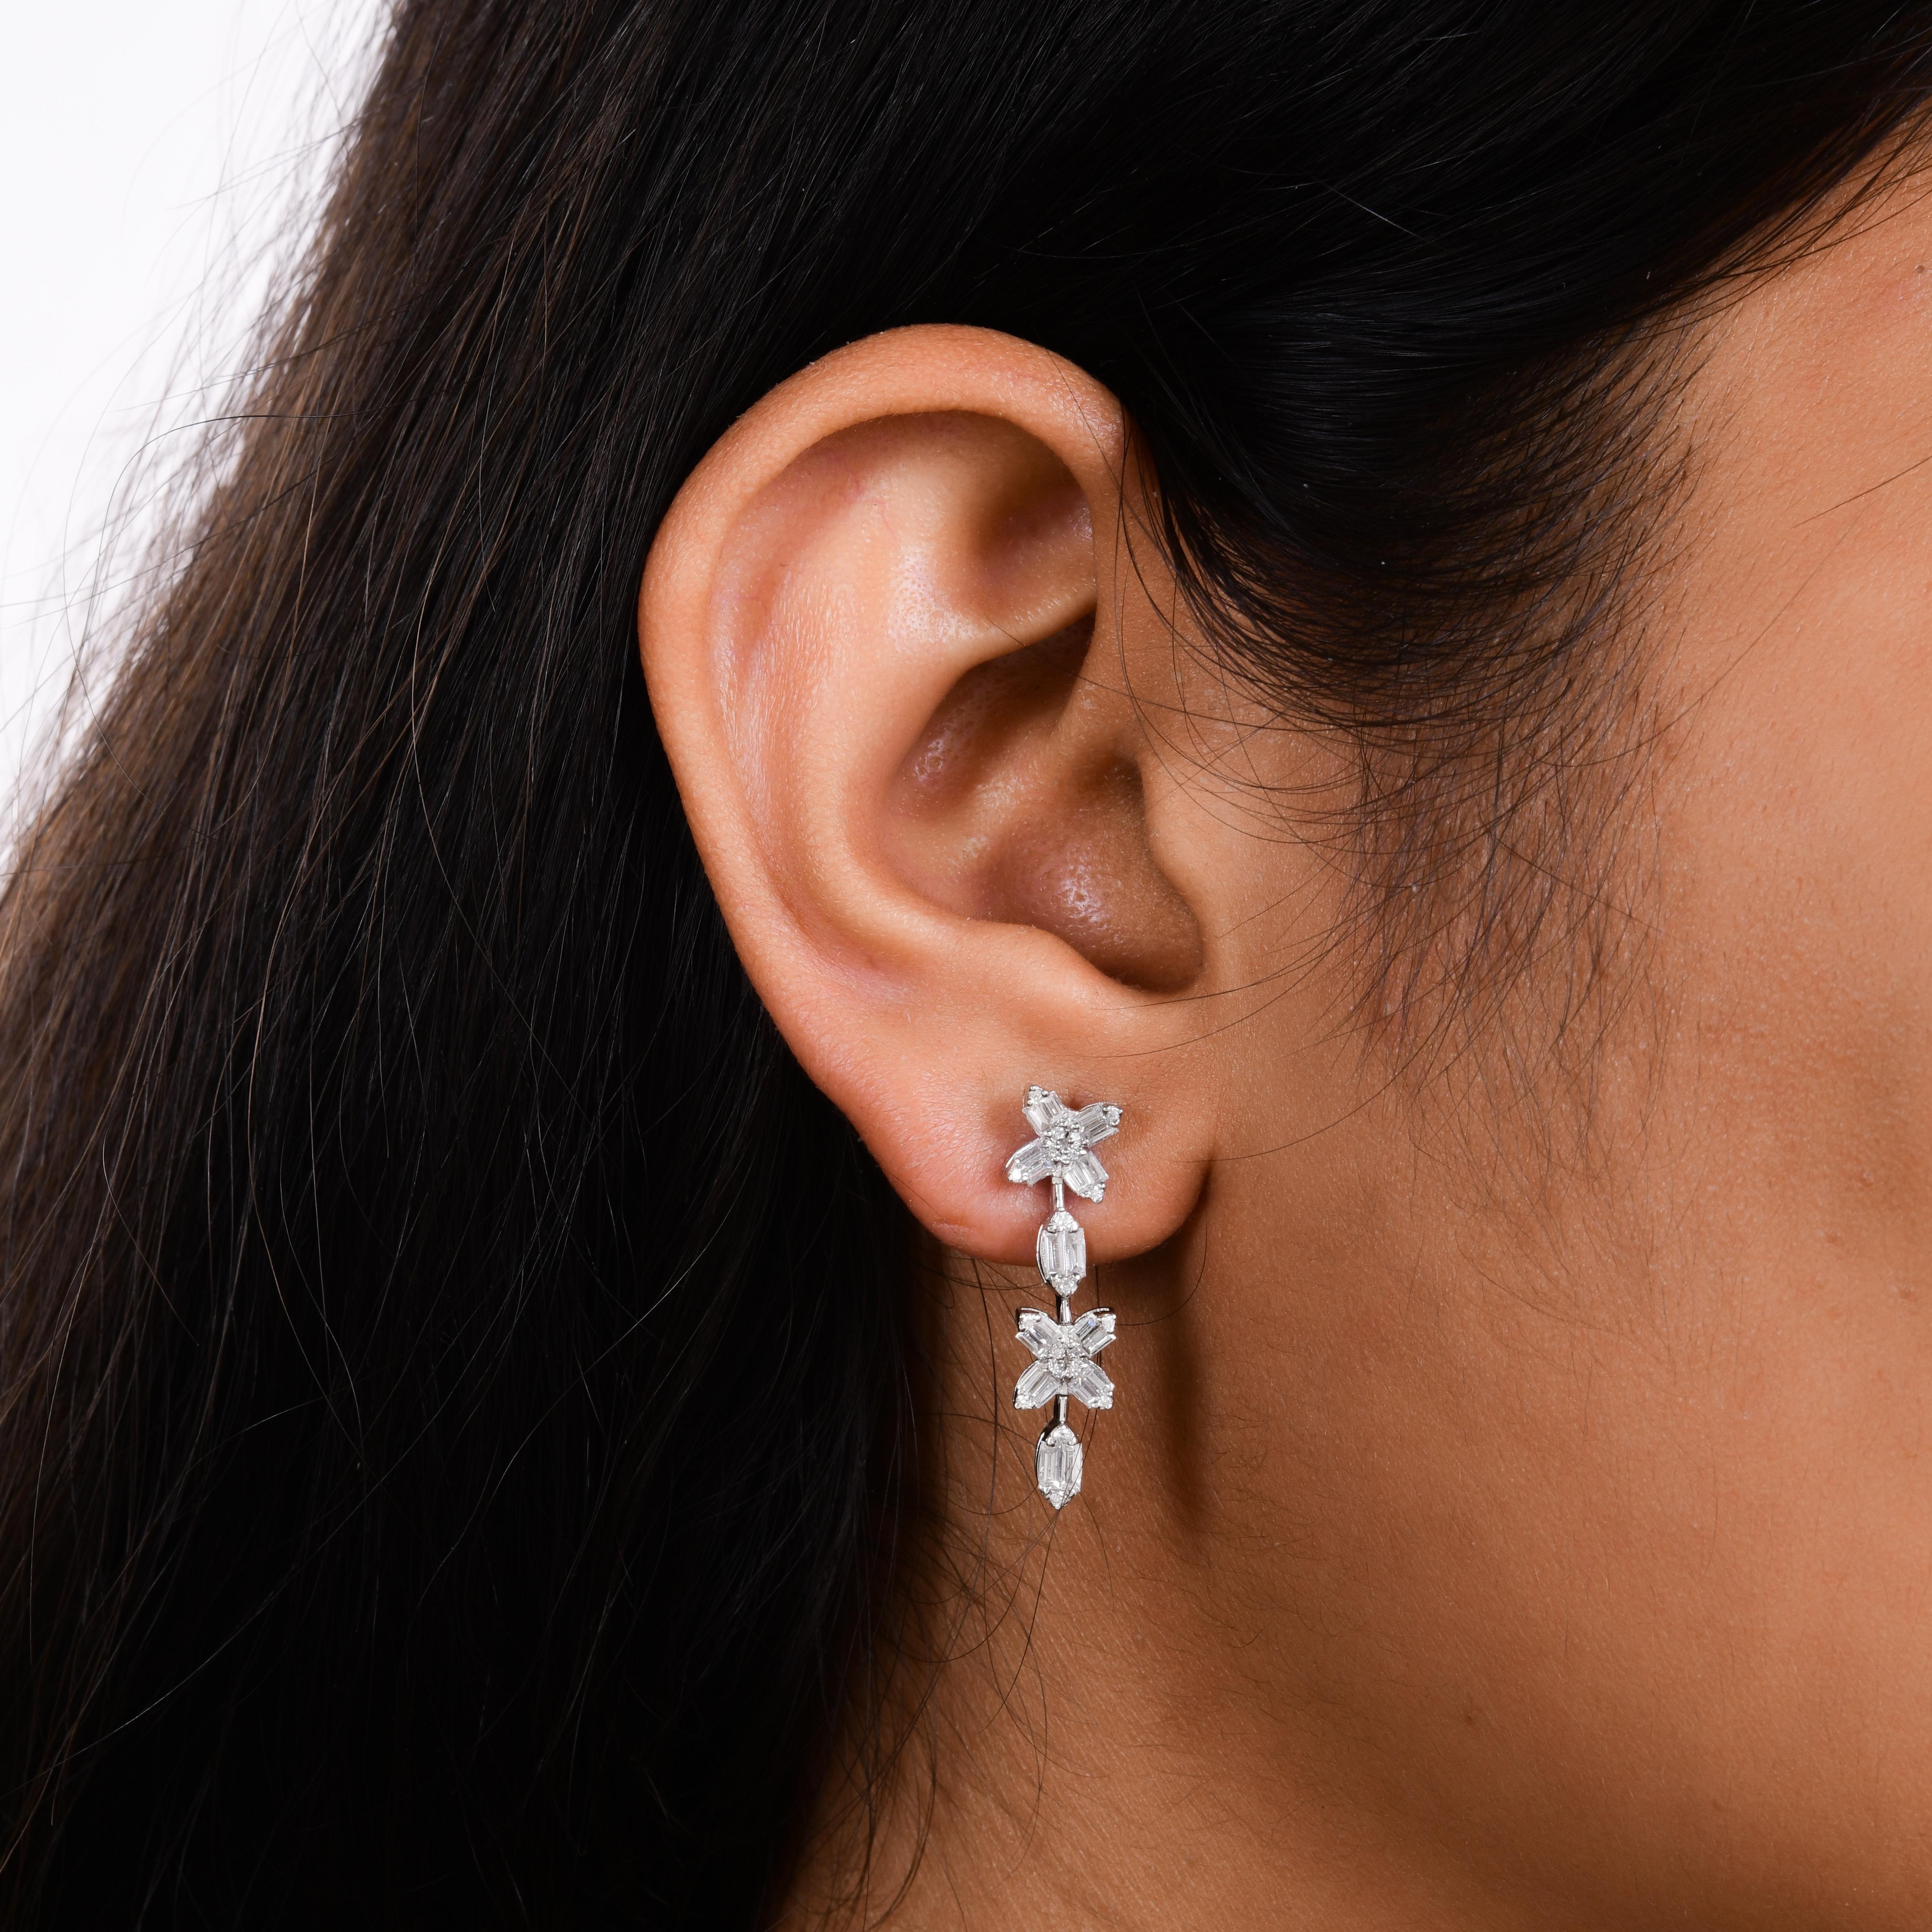 Ces boucles d'oreilles, délicatement suspendues à l'oreille, sont d'une élégance et d'une sophistication sans faille. La monture en or blanc 18 carats constitue la toile de fond idéale pour les diamants, dont elle rehausse la beauté naturelle et